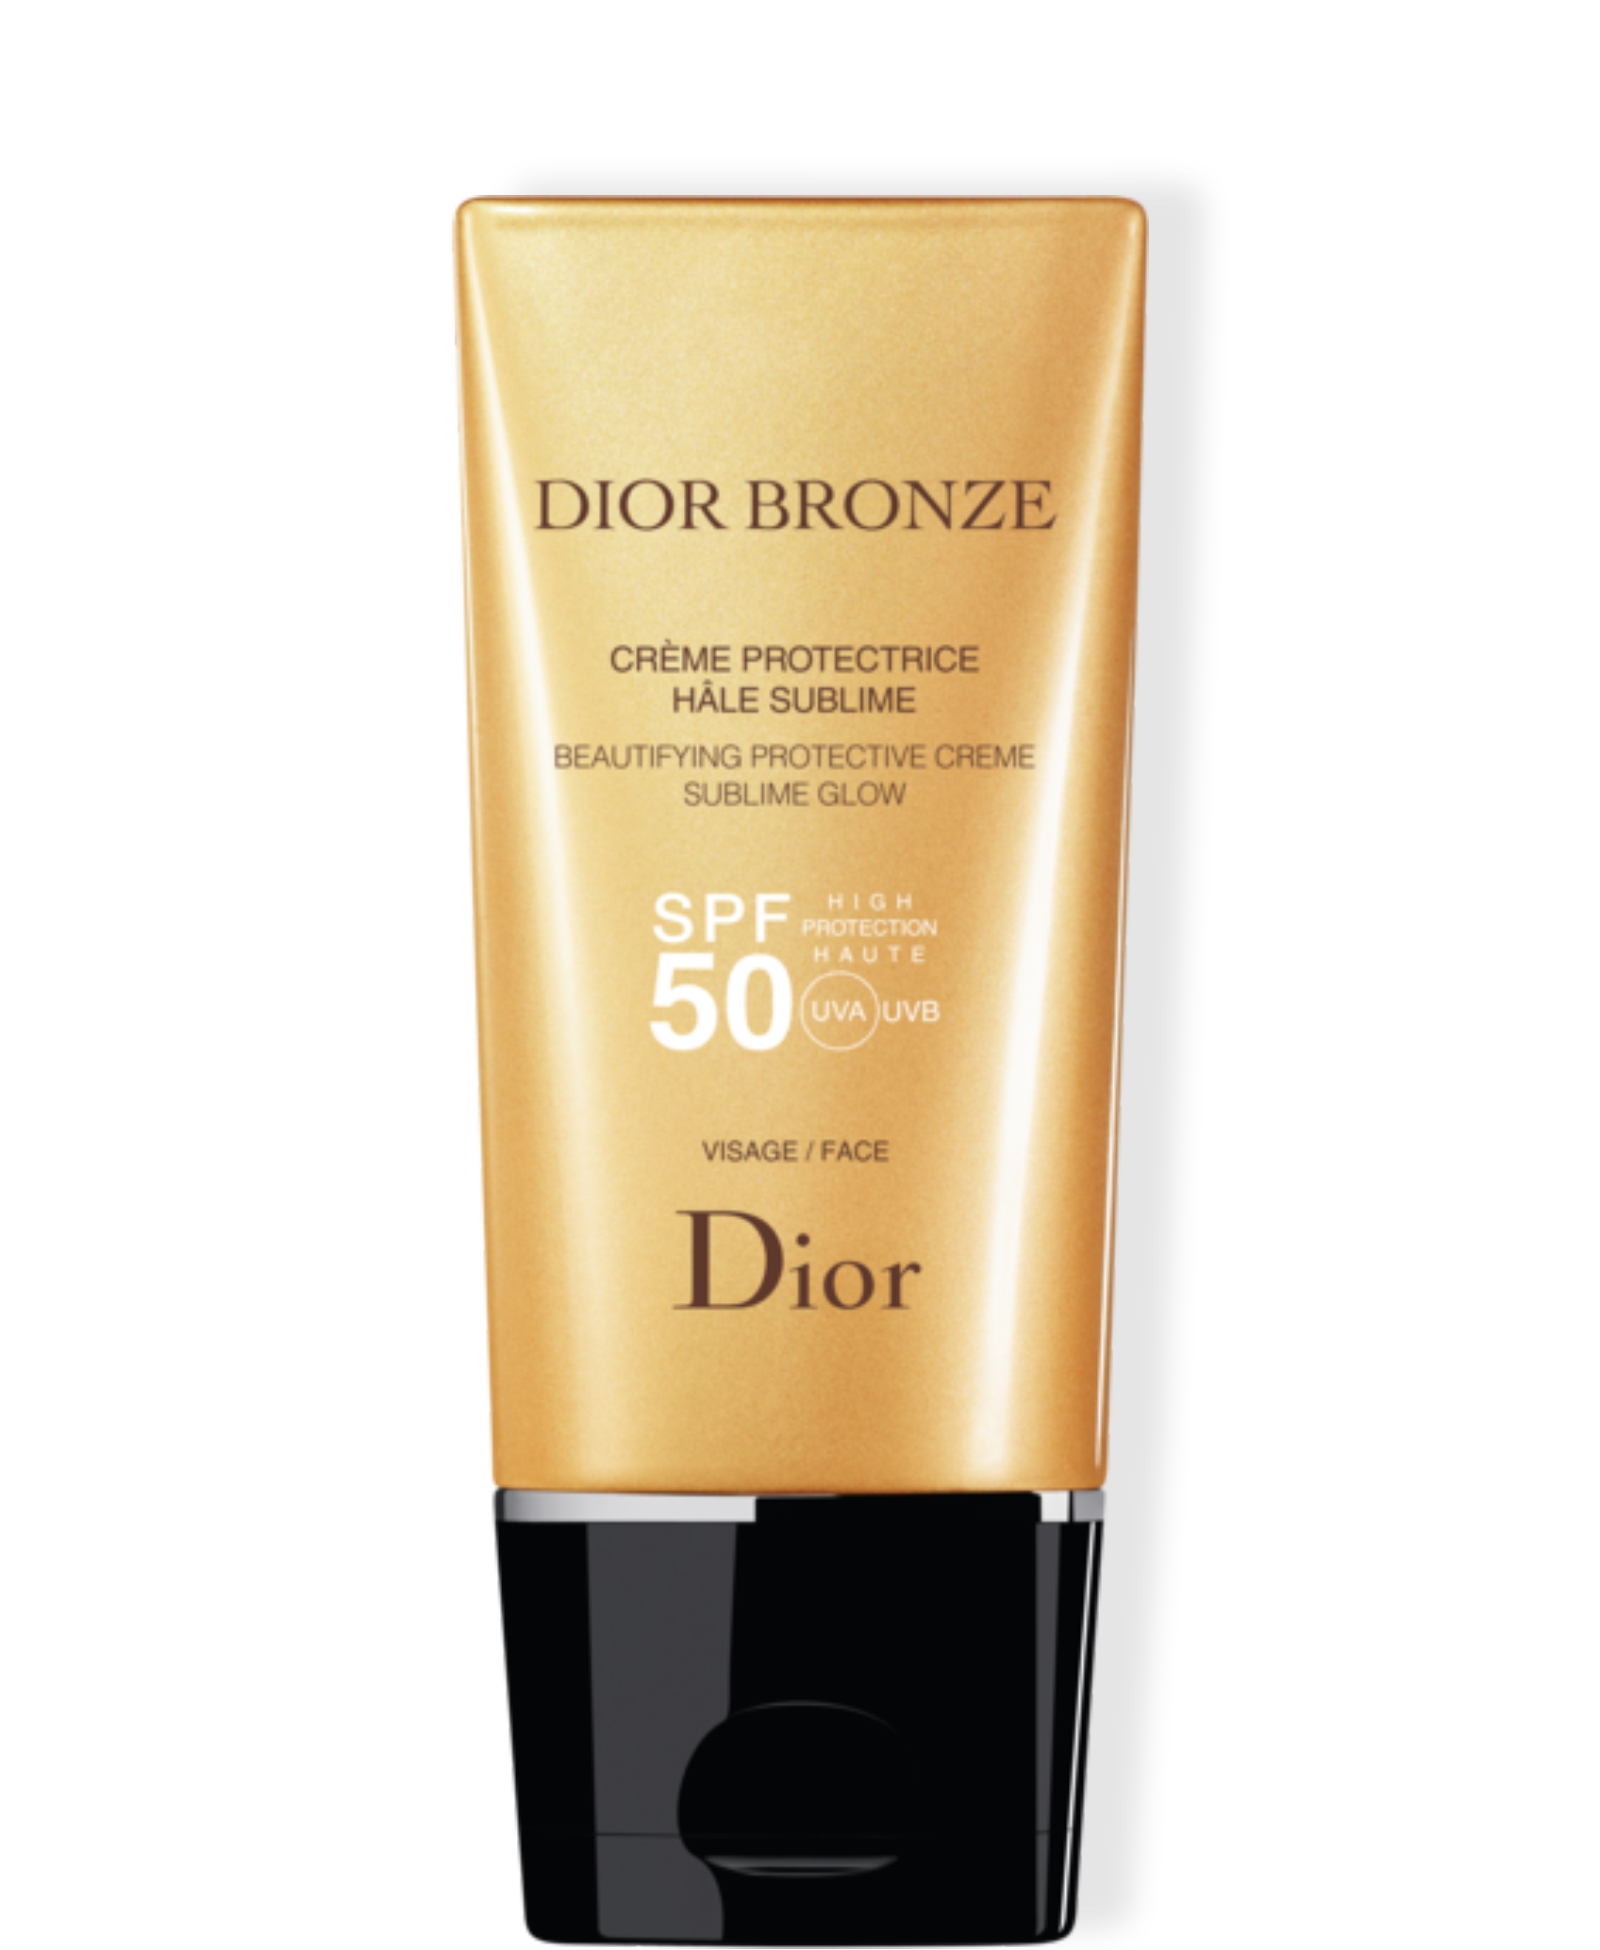  Dior Bronze Protective Creme Face